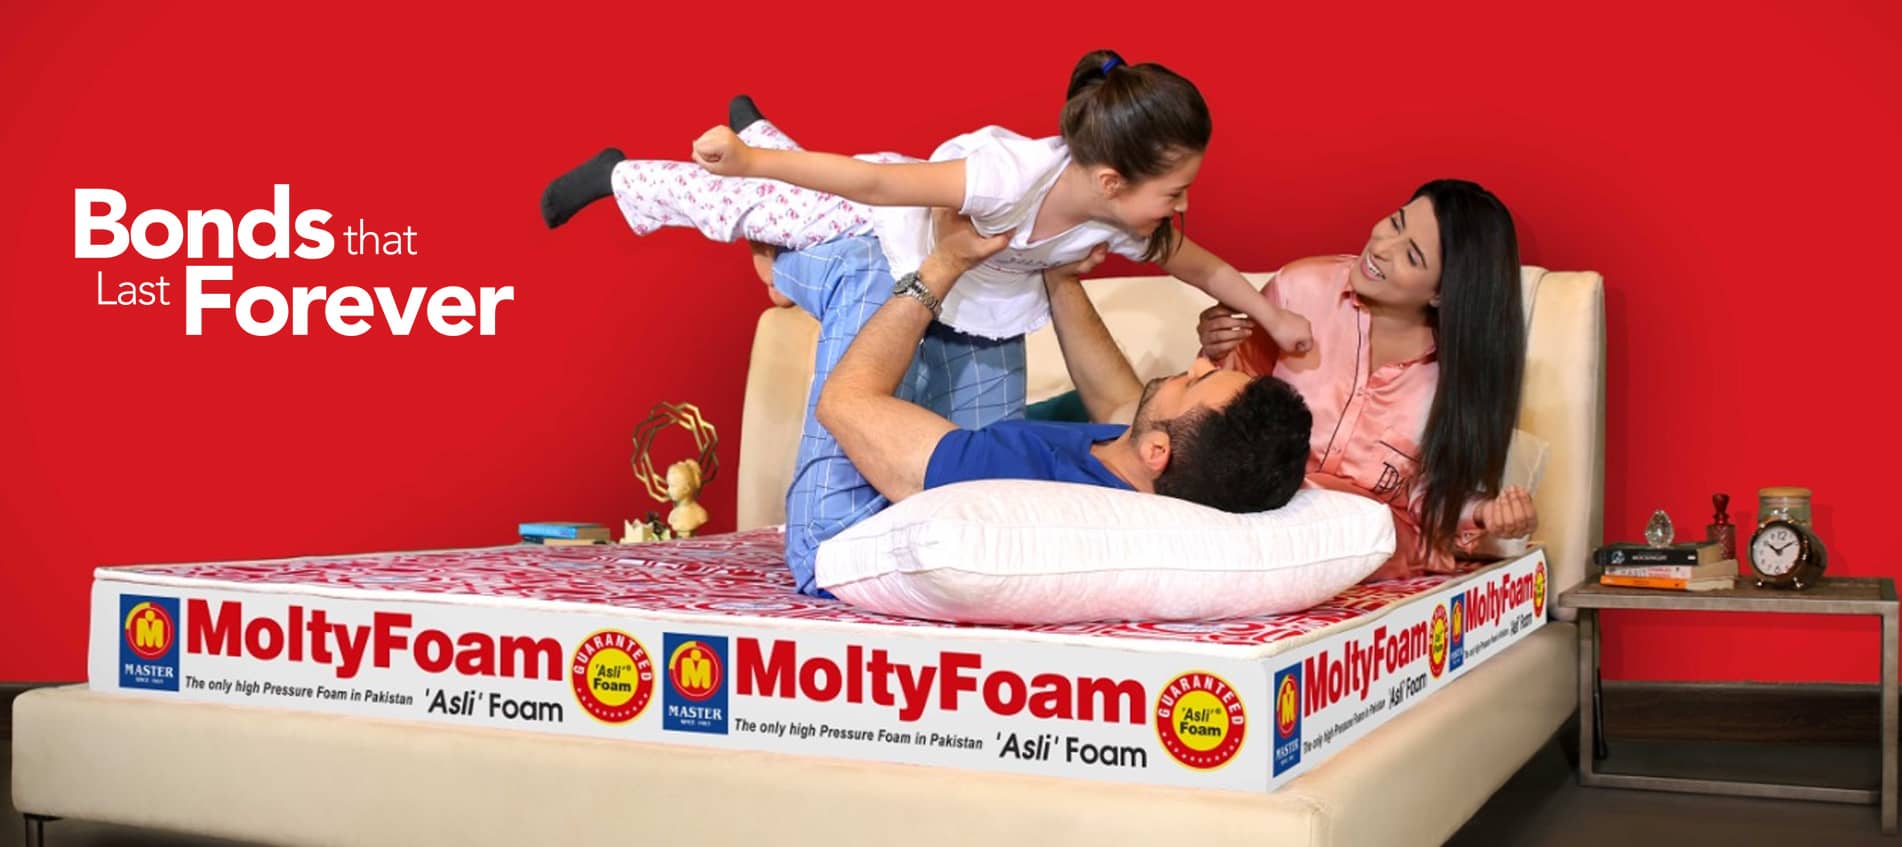 MoltyFoam